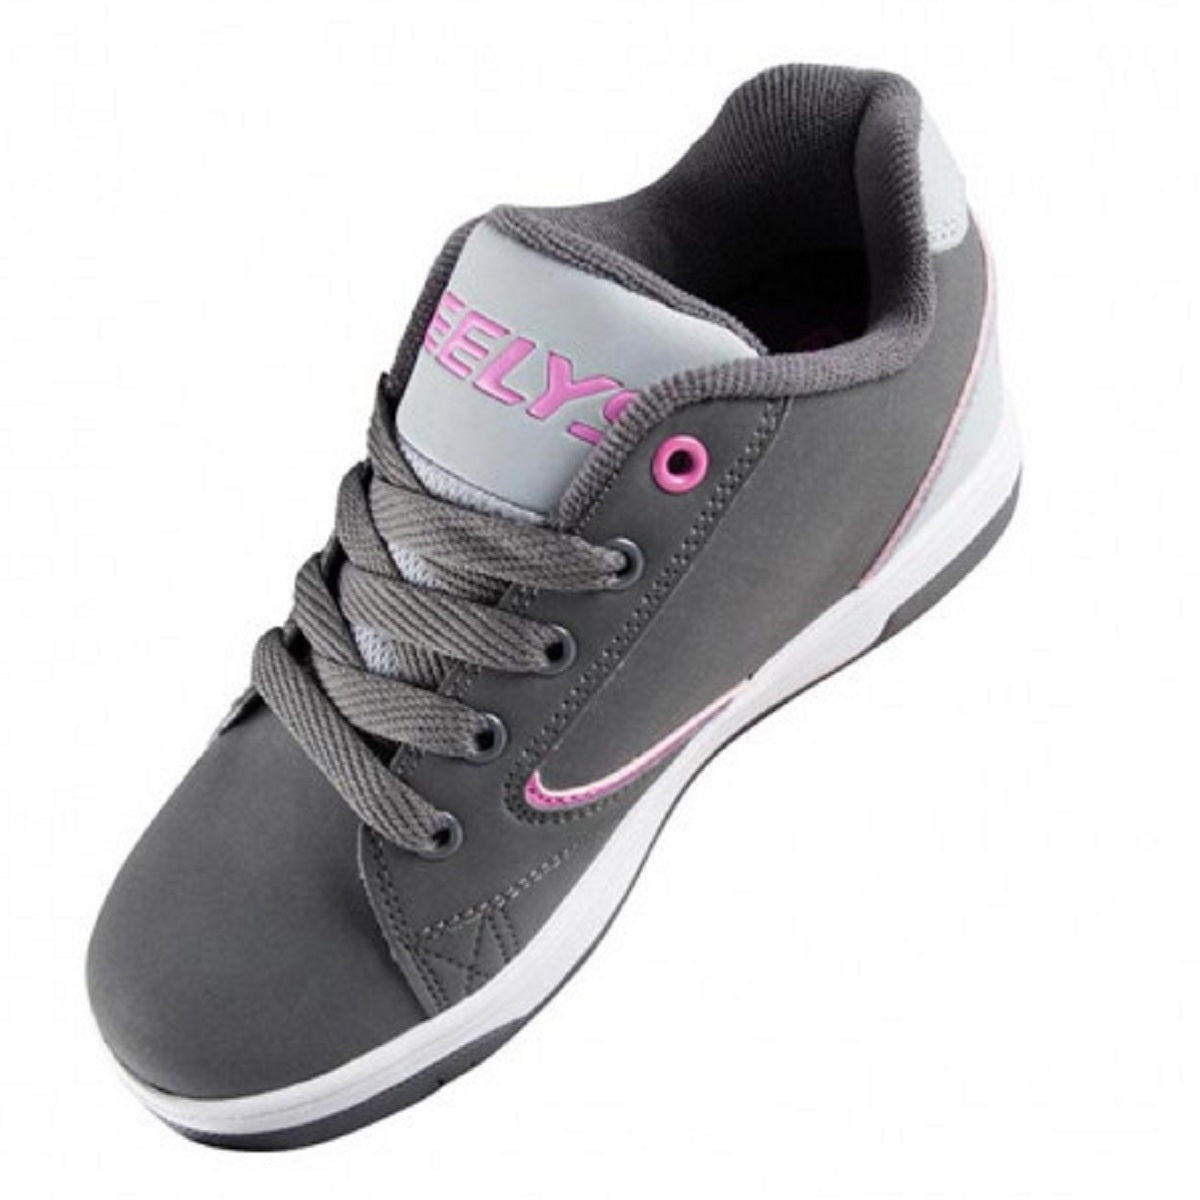 heelys-roller-shoe-propel-2-0-he100041-charcoal-gray-pink-4-519-21893.jpg.jpg